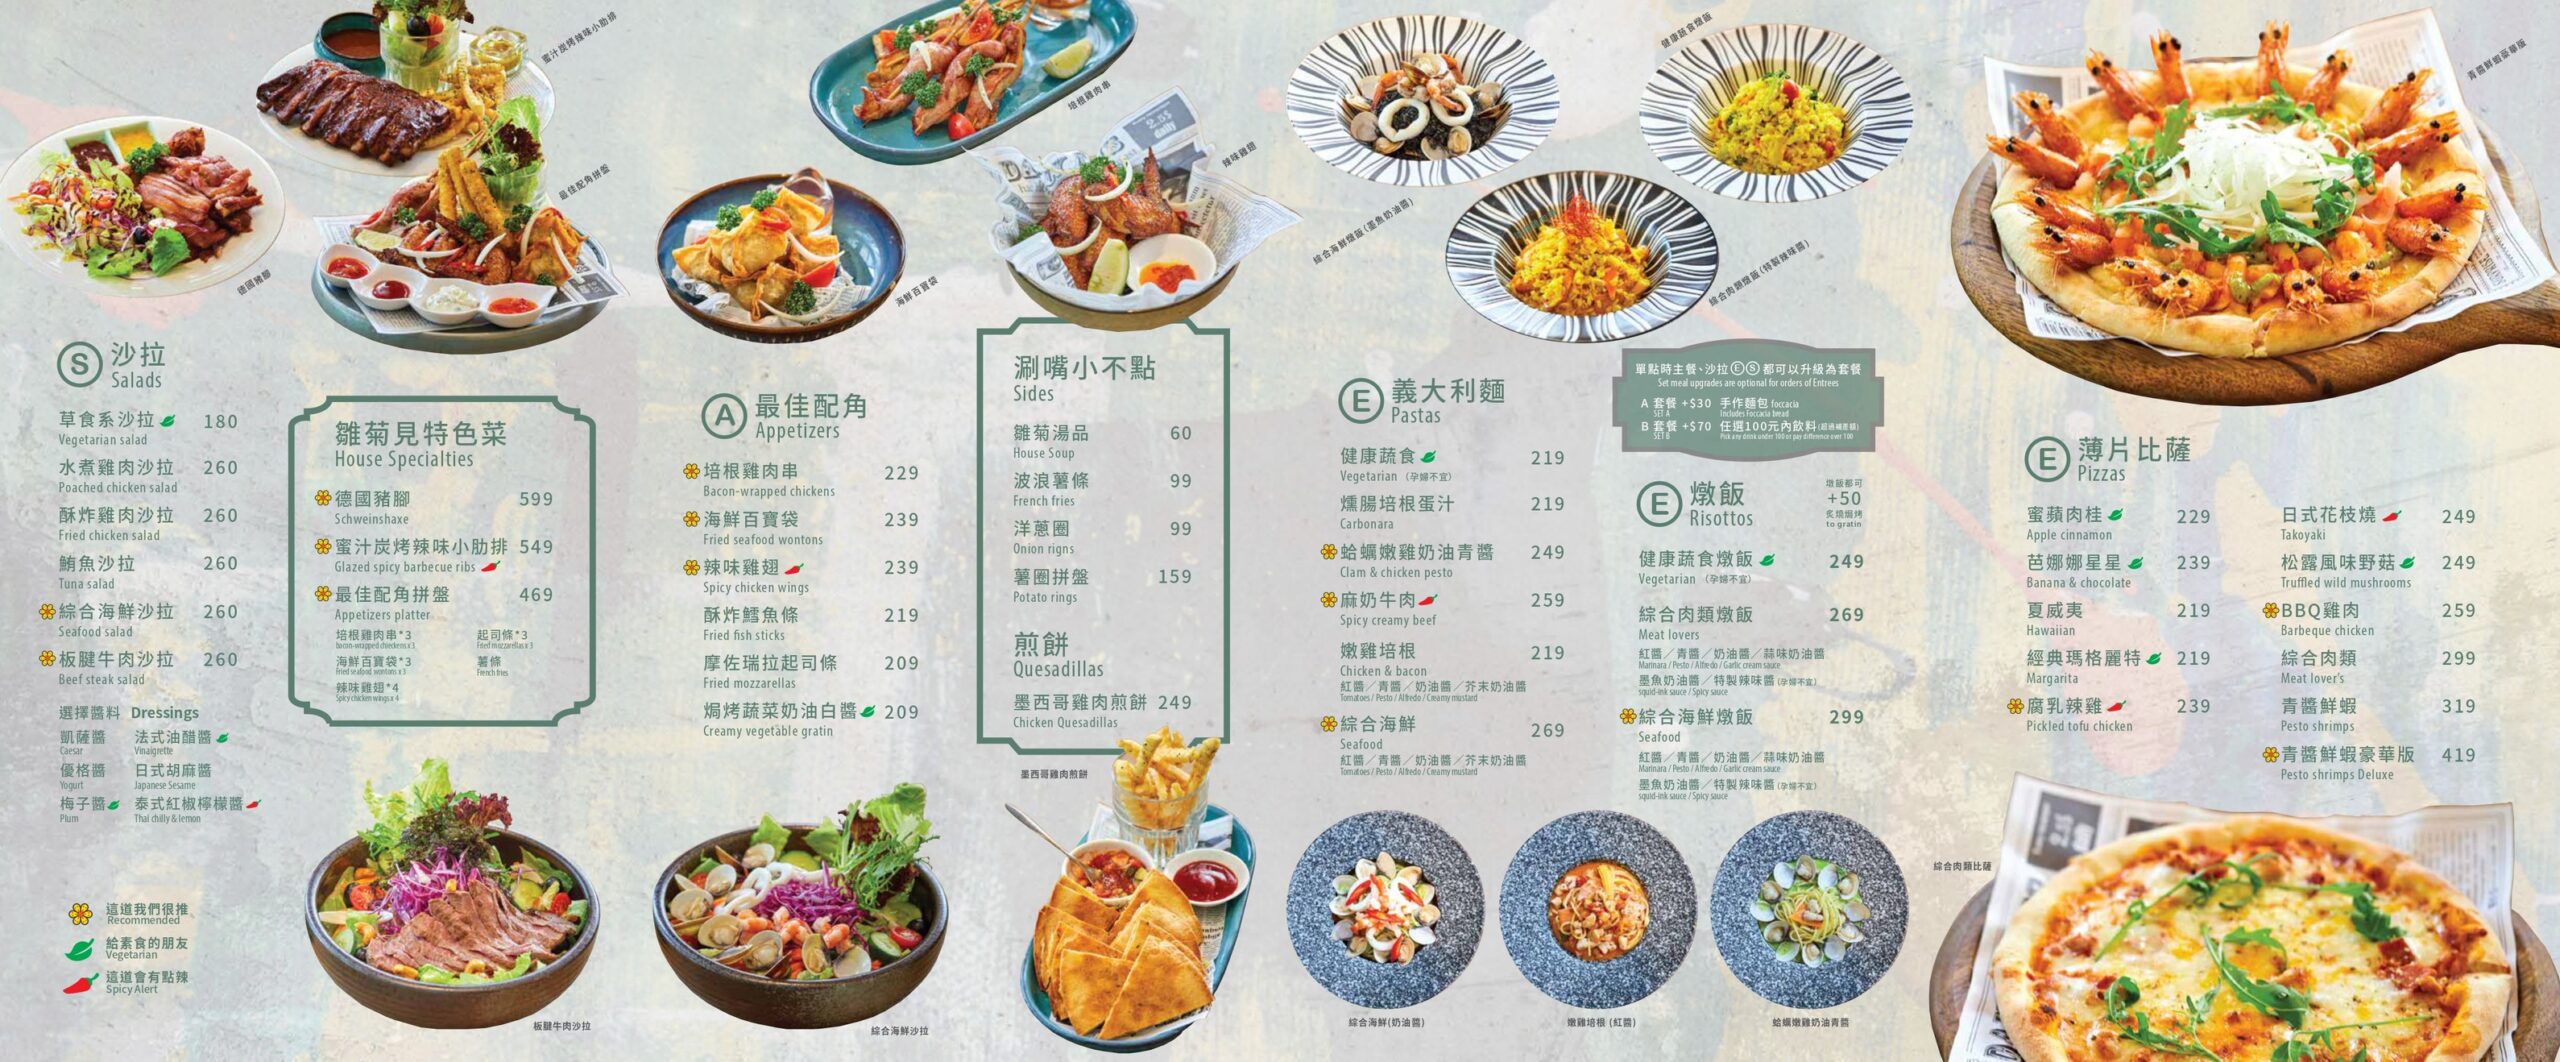 高雄景點|雛菊DAISY VILLA餐酒館高雄青海店|浪漫滿分~叢林風質感餐廳!